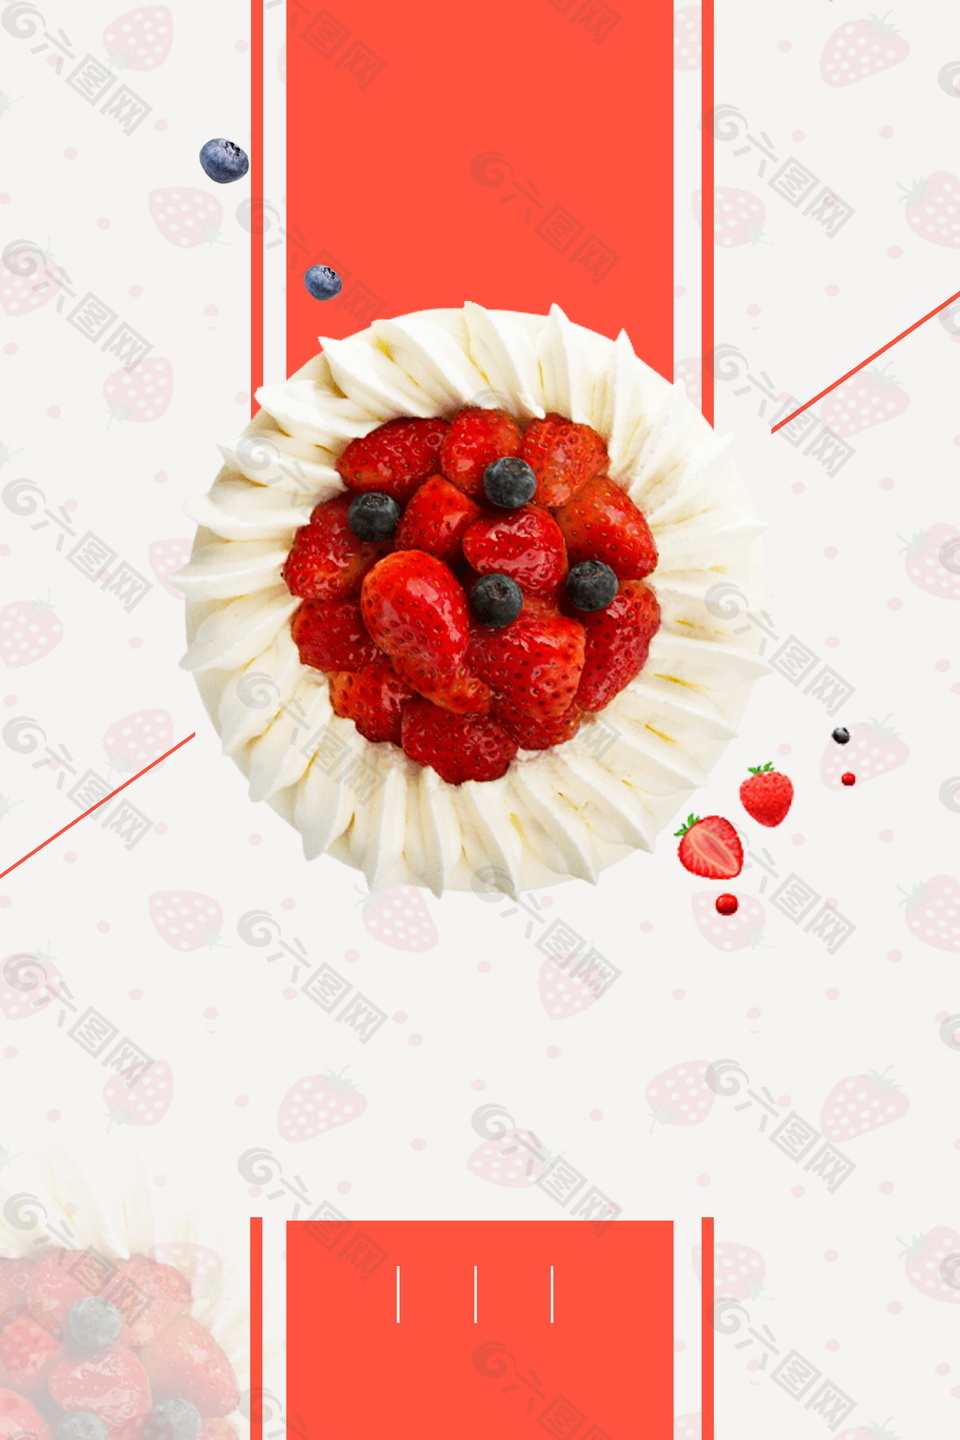 清新草莓奶油蛋糕广告背景